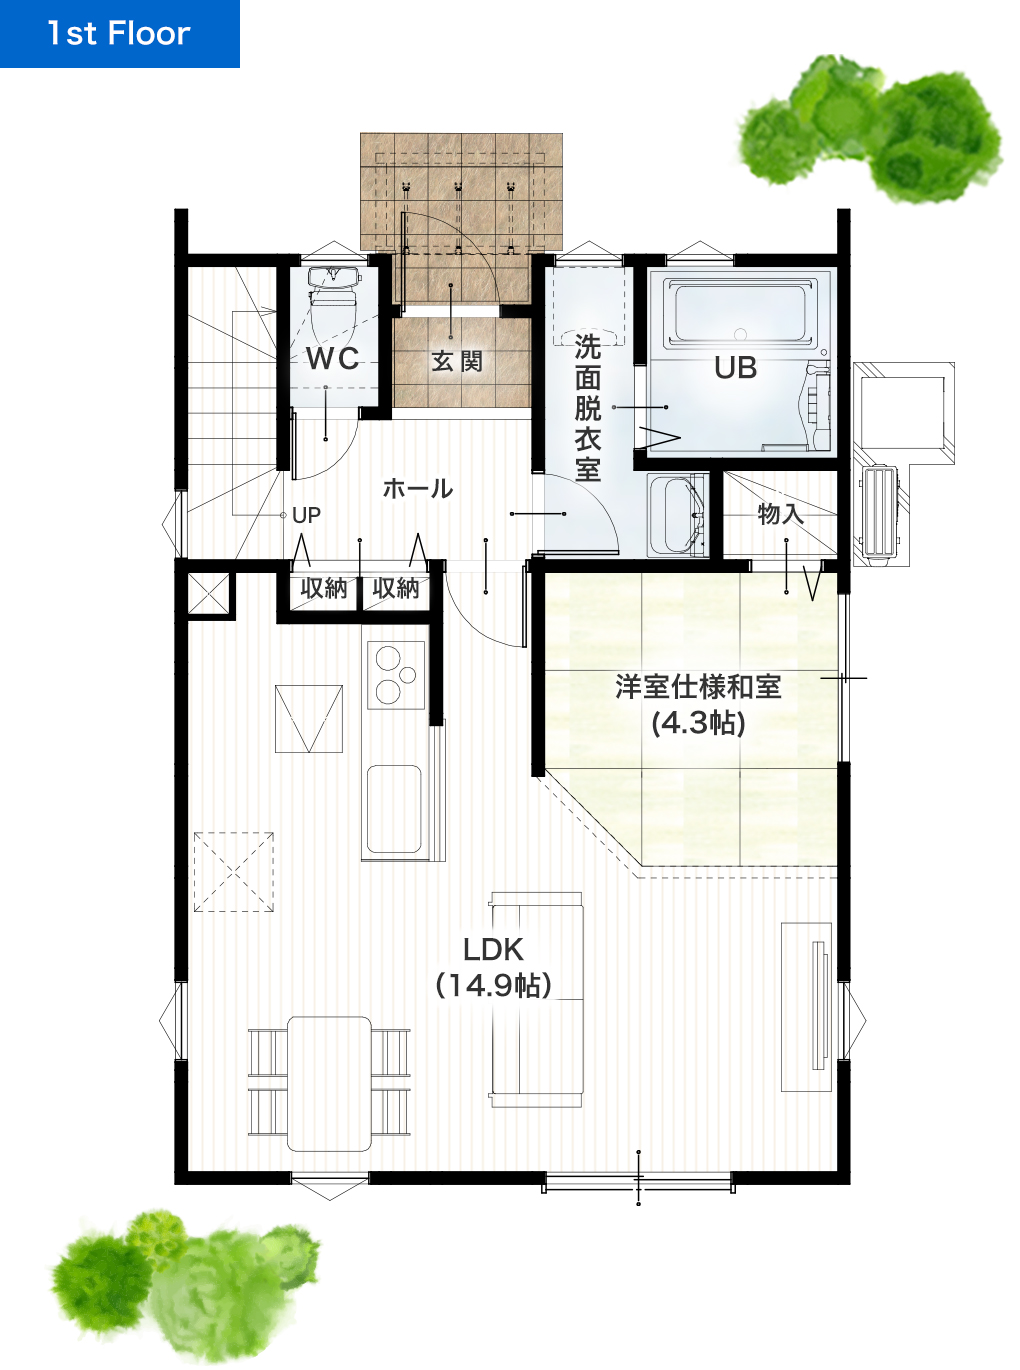 合志市須屋13期B 26坪 4LDK 建売・一戸建ての新築物件 1階間取り図